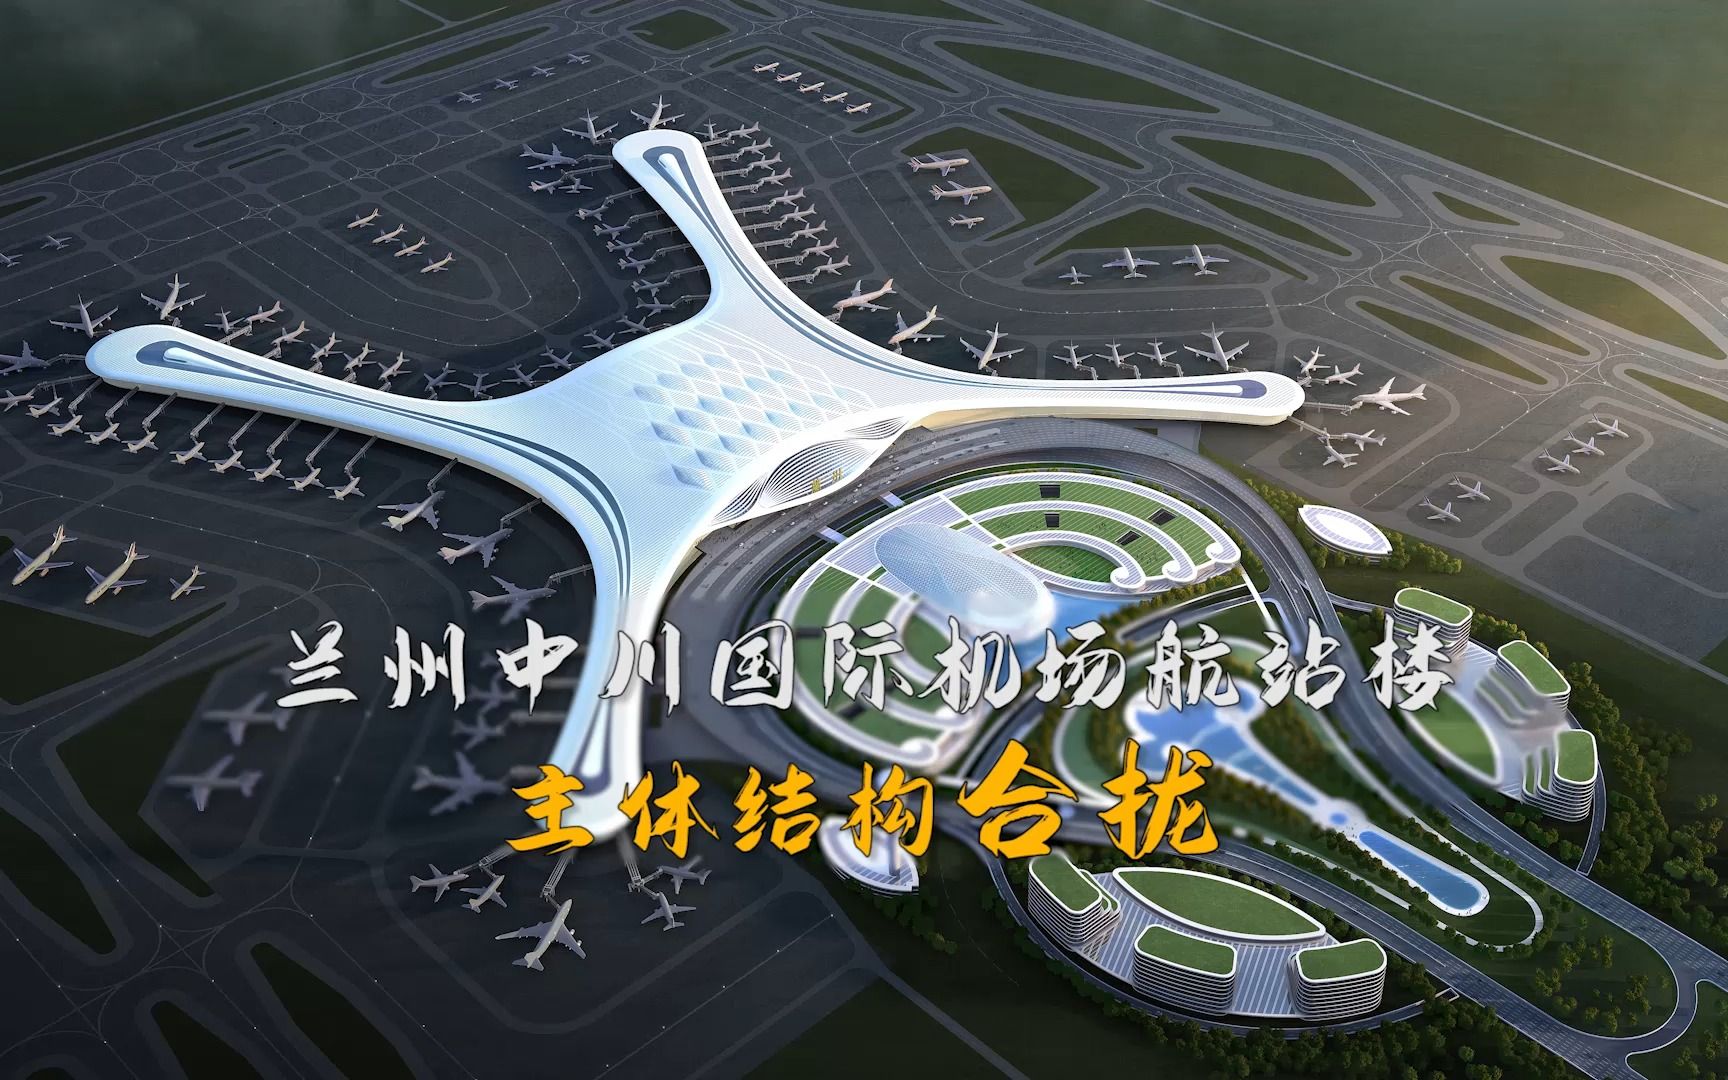 兰州中川国际机场航站楼工程主体结构合拢